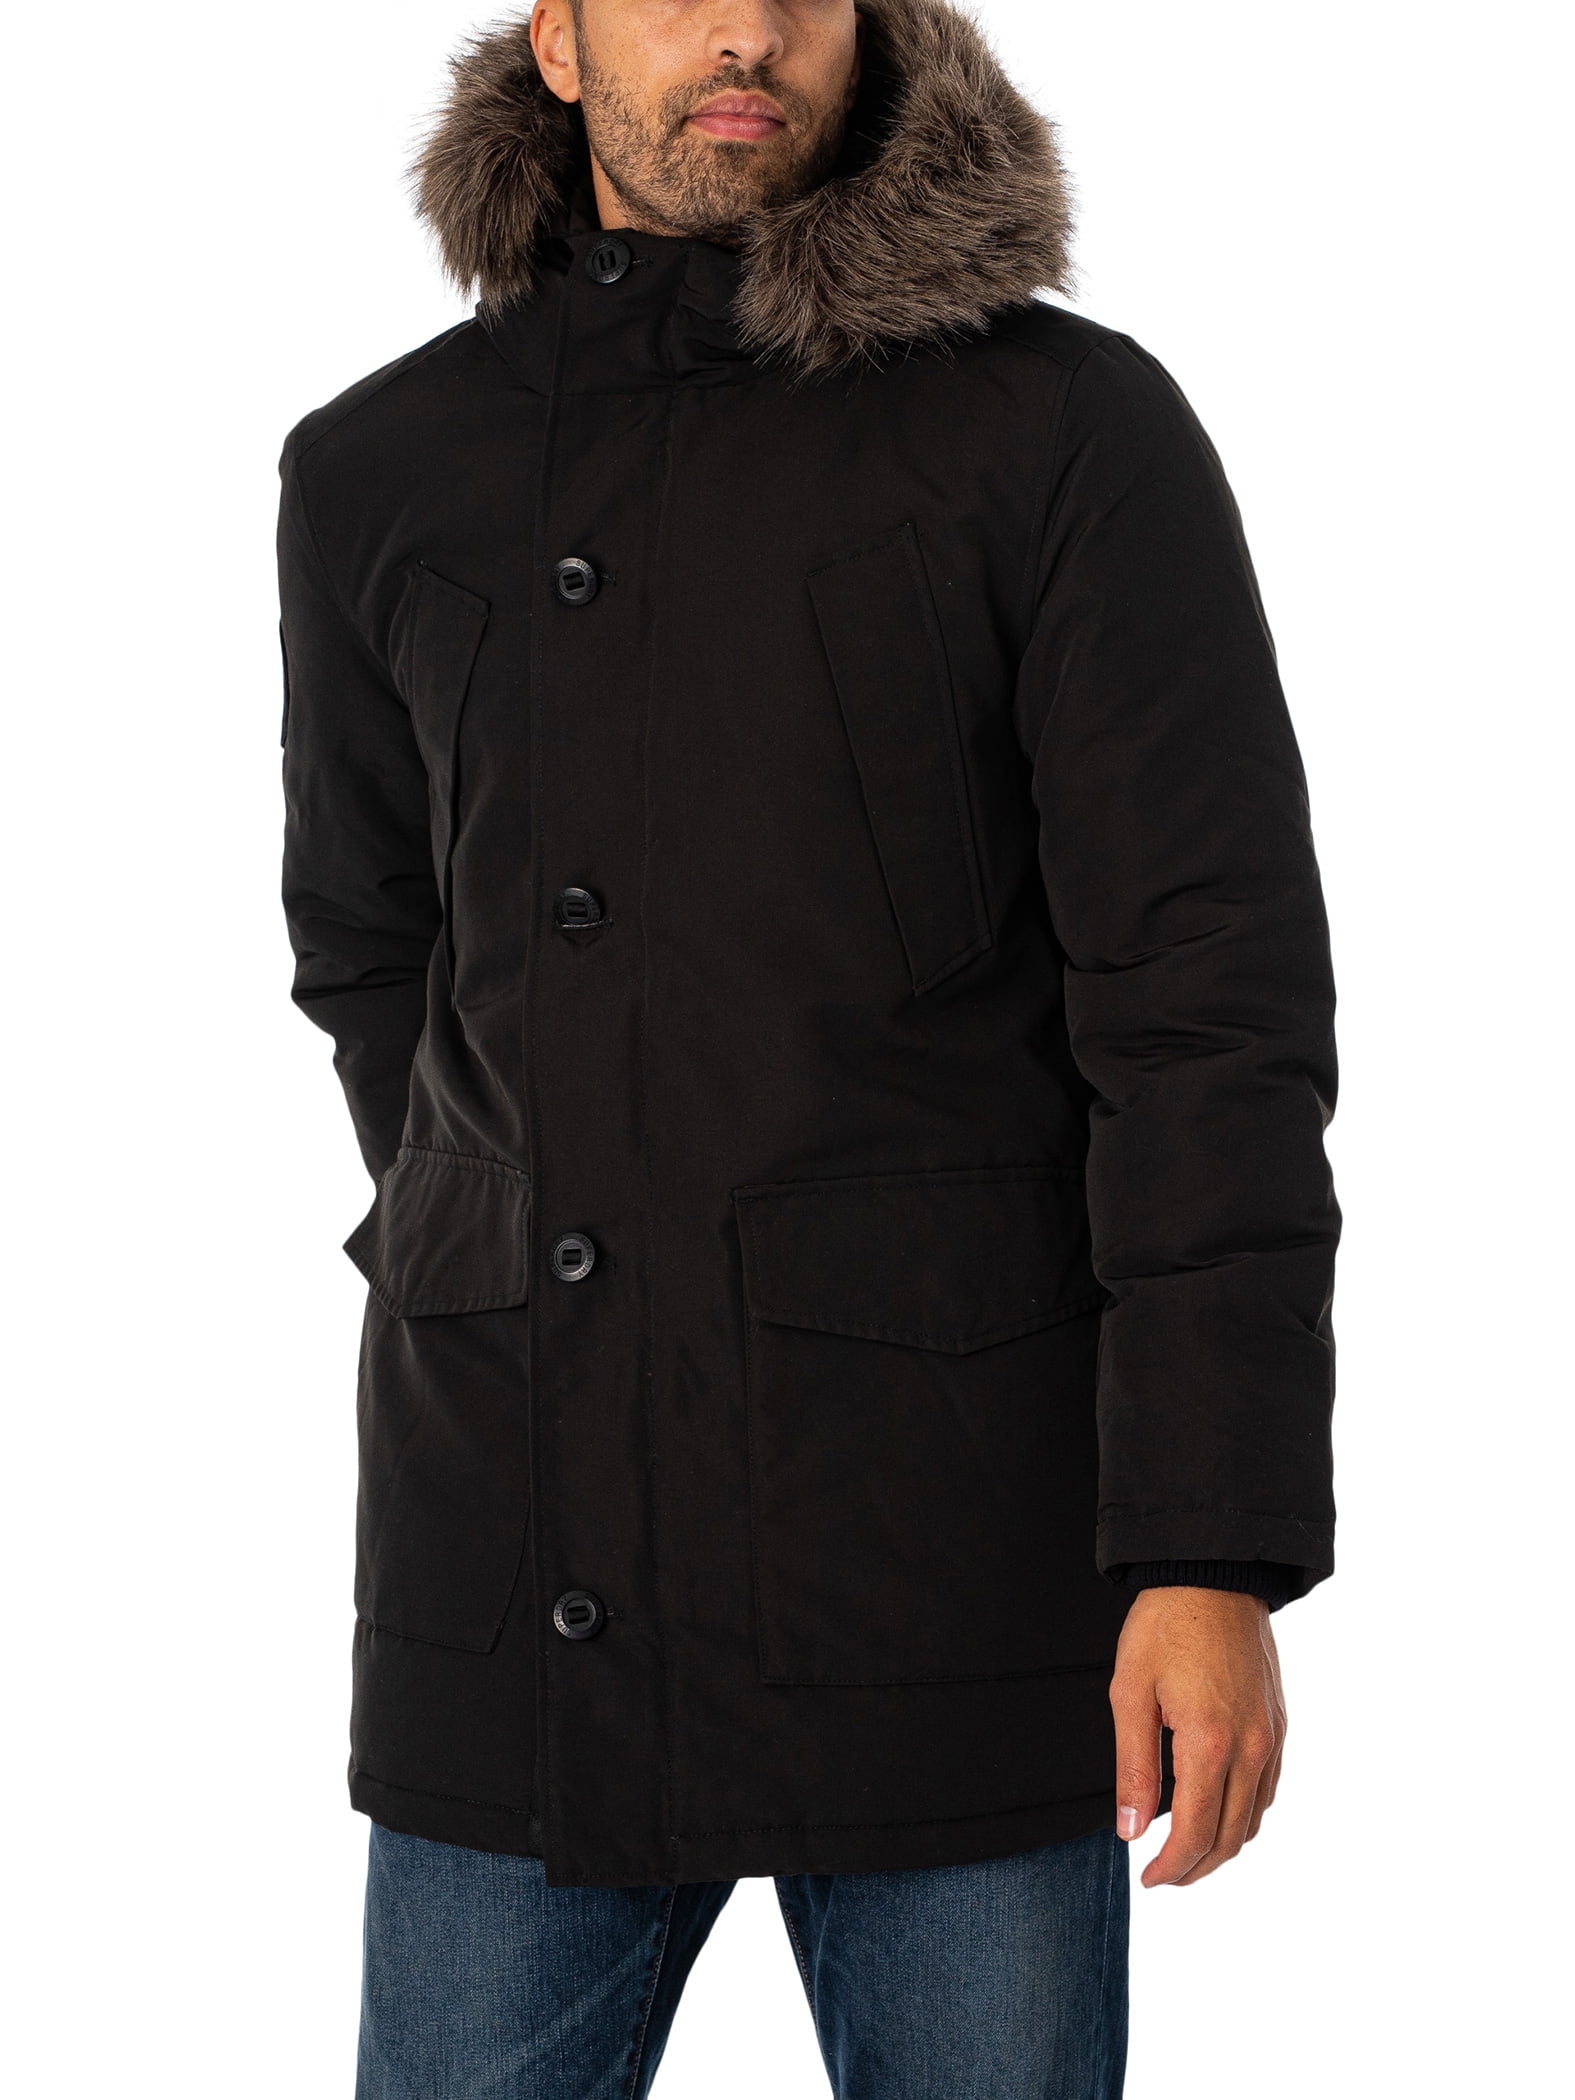 Superdry Everest Faux Fur Parka Jacket, Black